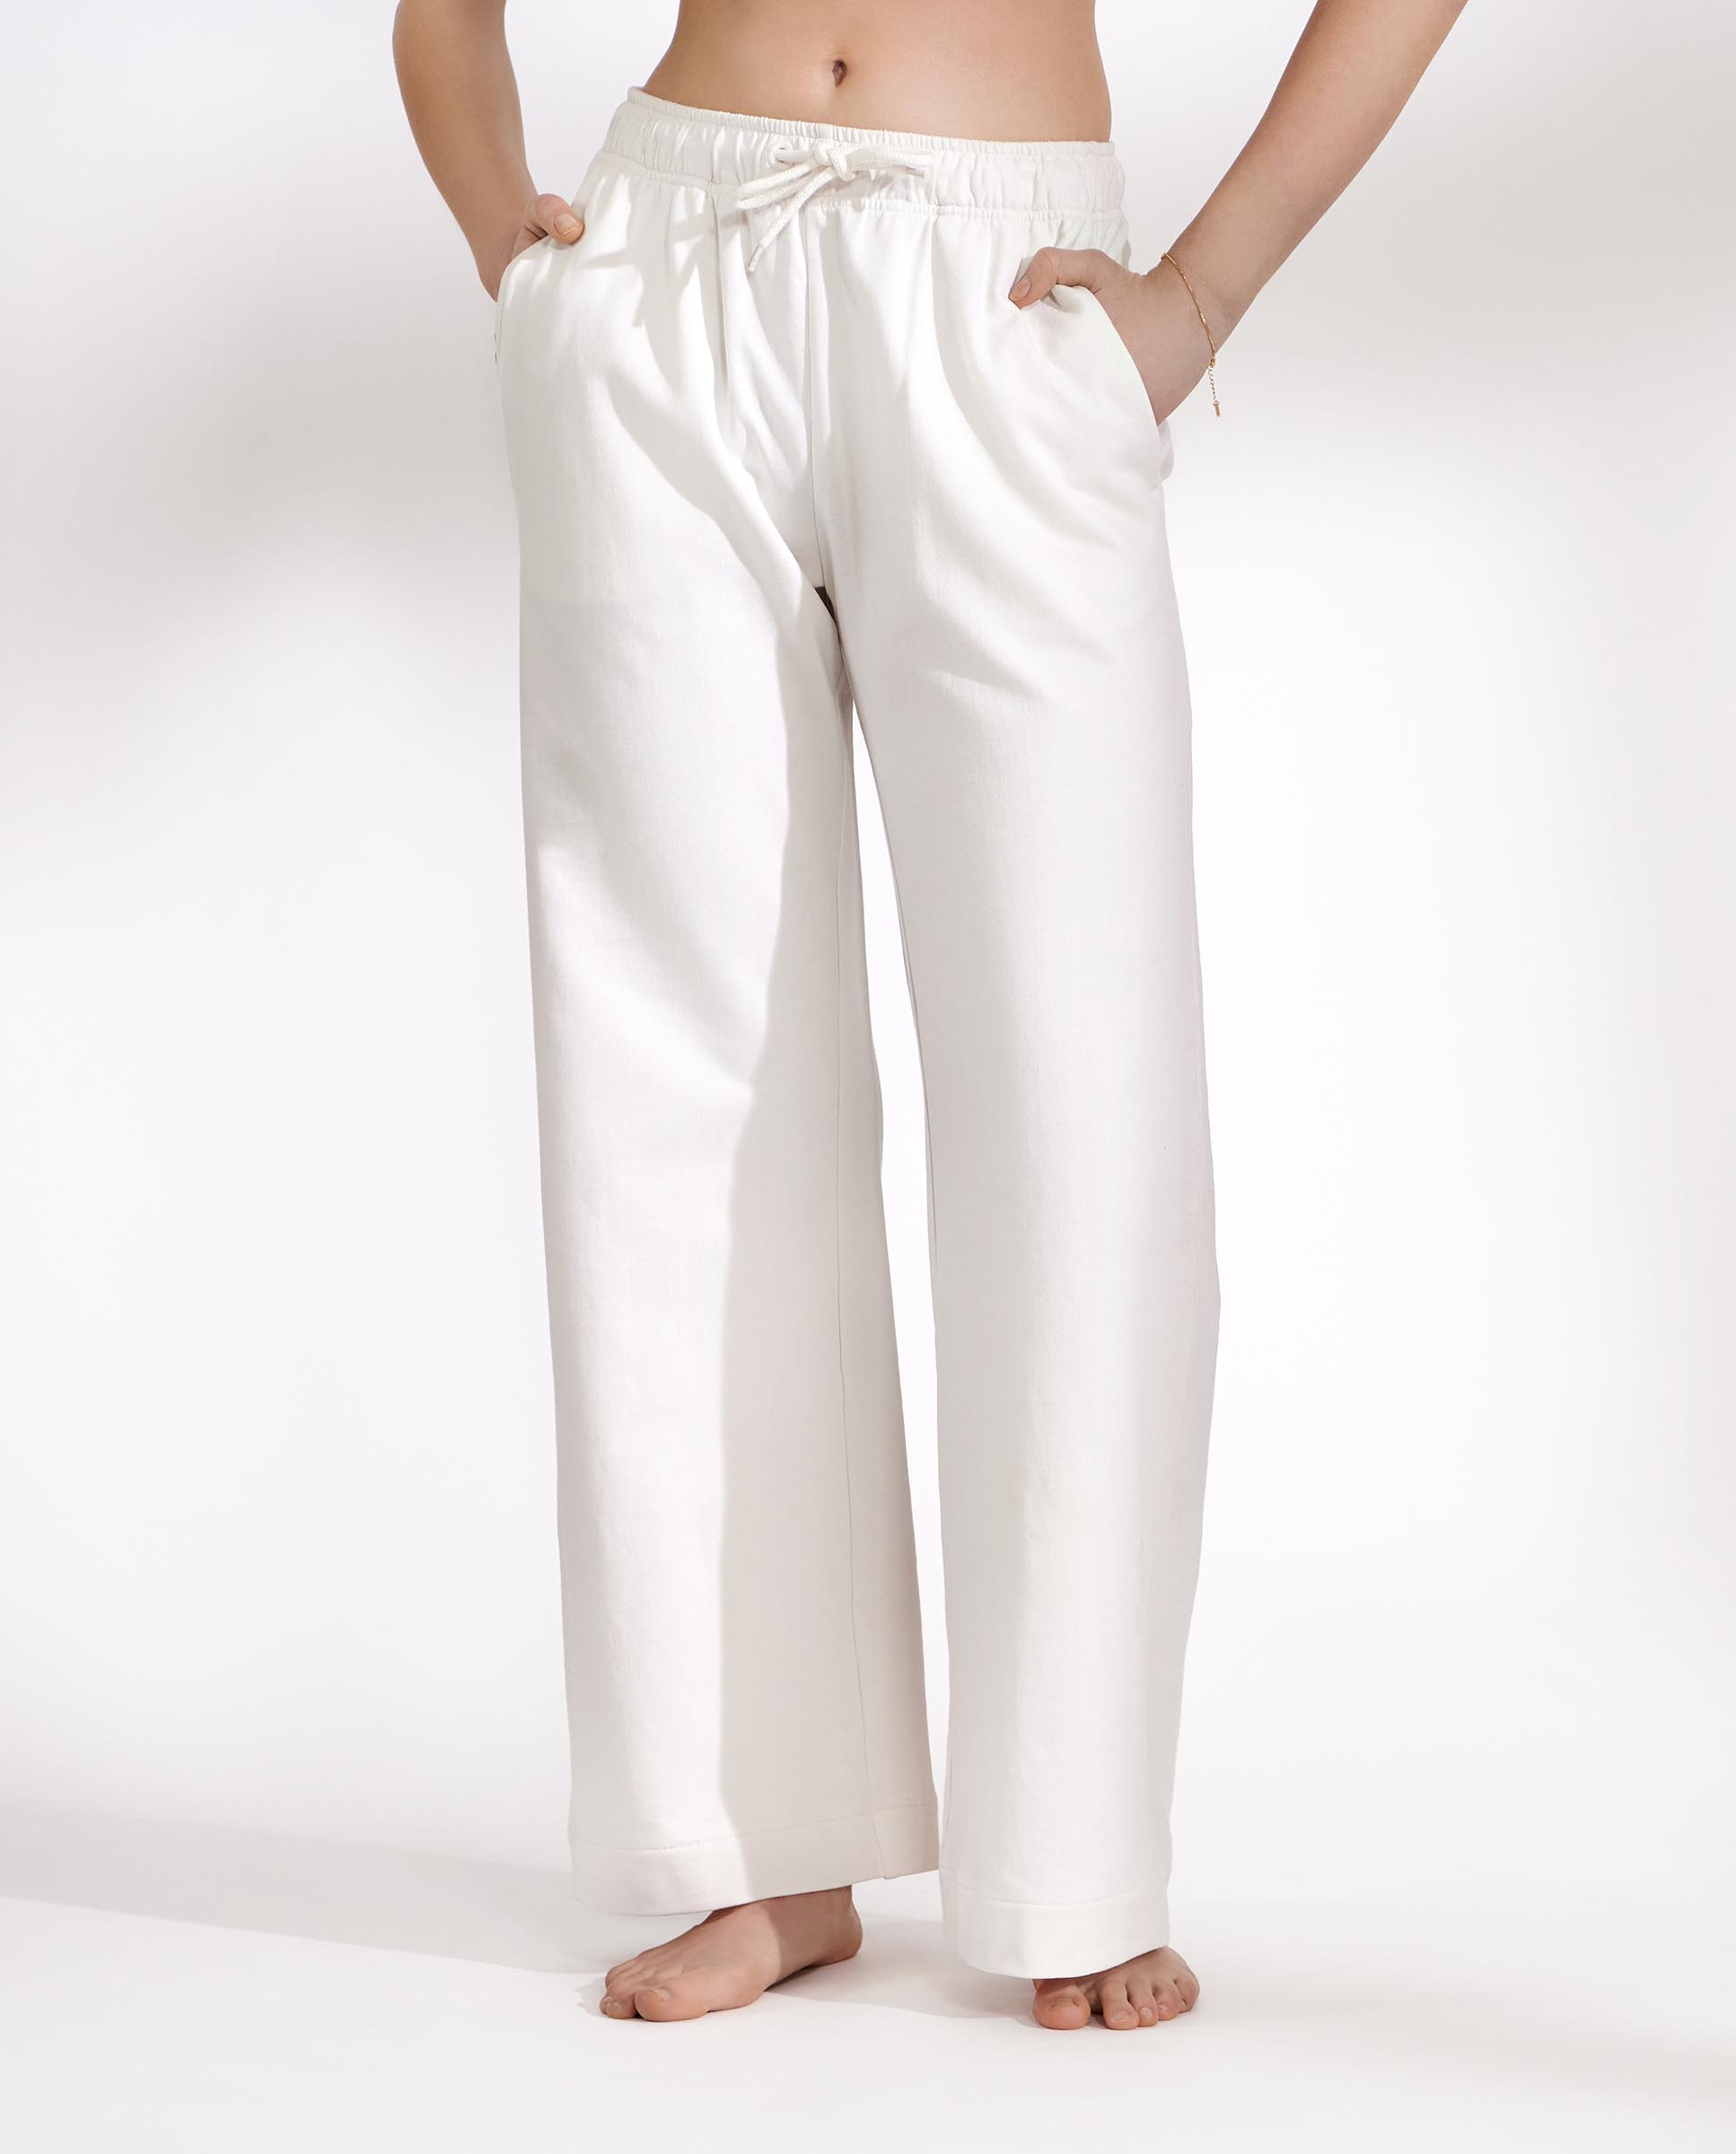 Pantalon wide-leg de algodón orgánico blanco marfil – 90823-0081